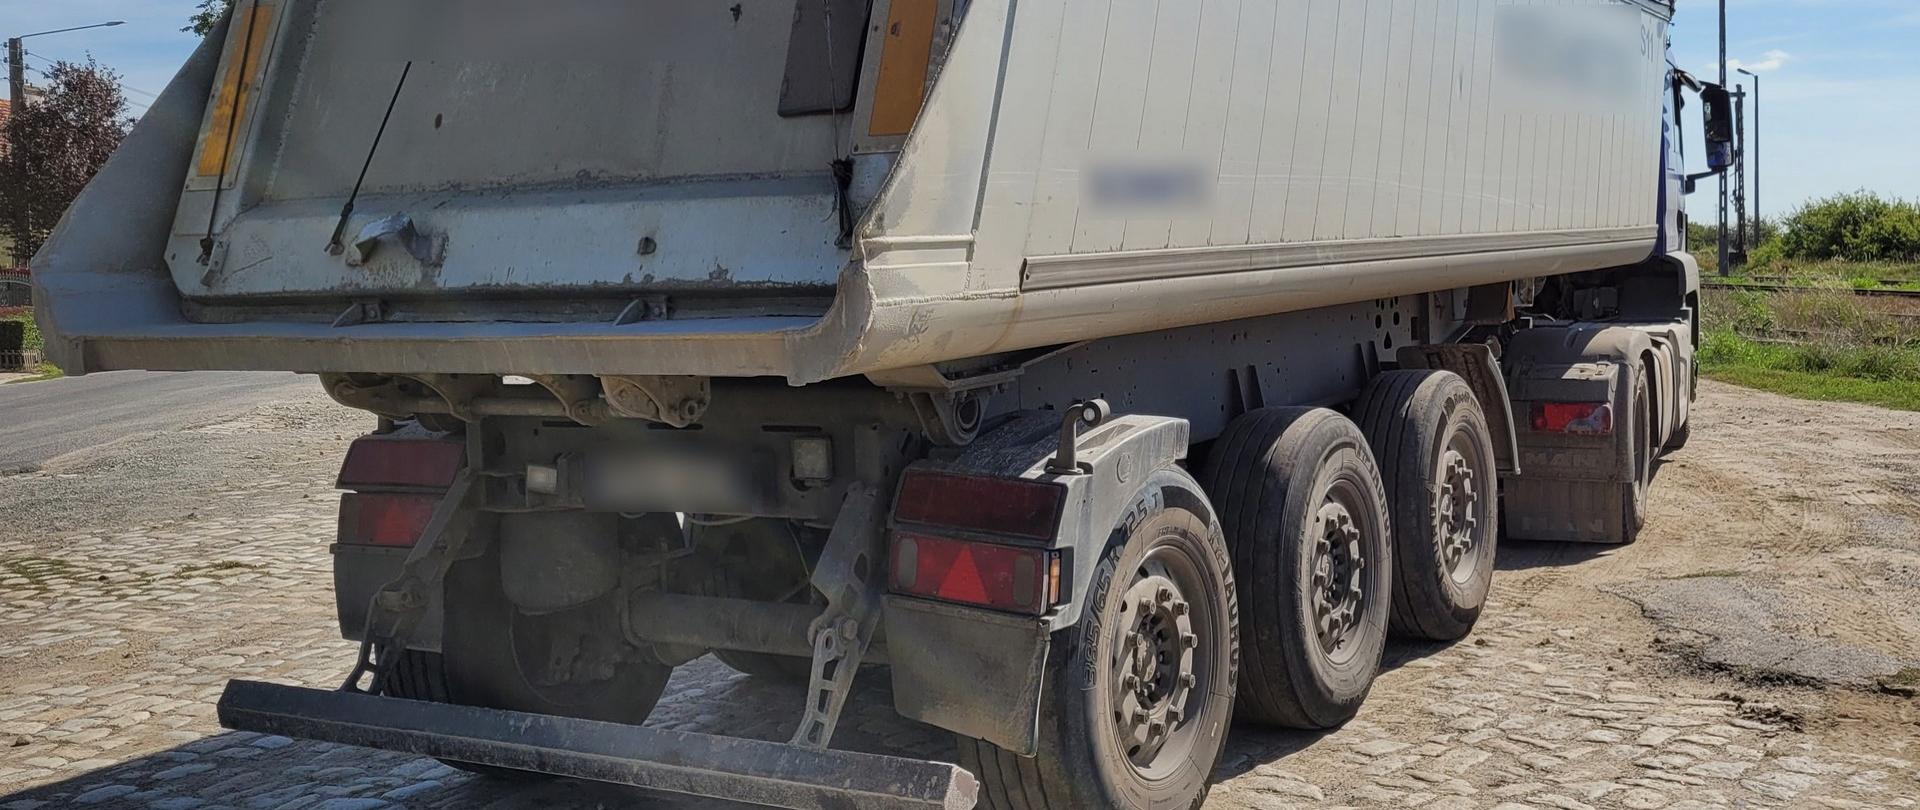 Popękane i zużyte tarcze hamulcowe na wszystkich osiach naczepy ciężarowej stwierdzili inspektorzy z Leszna 